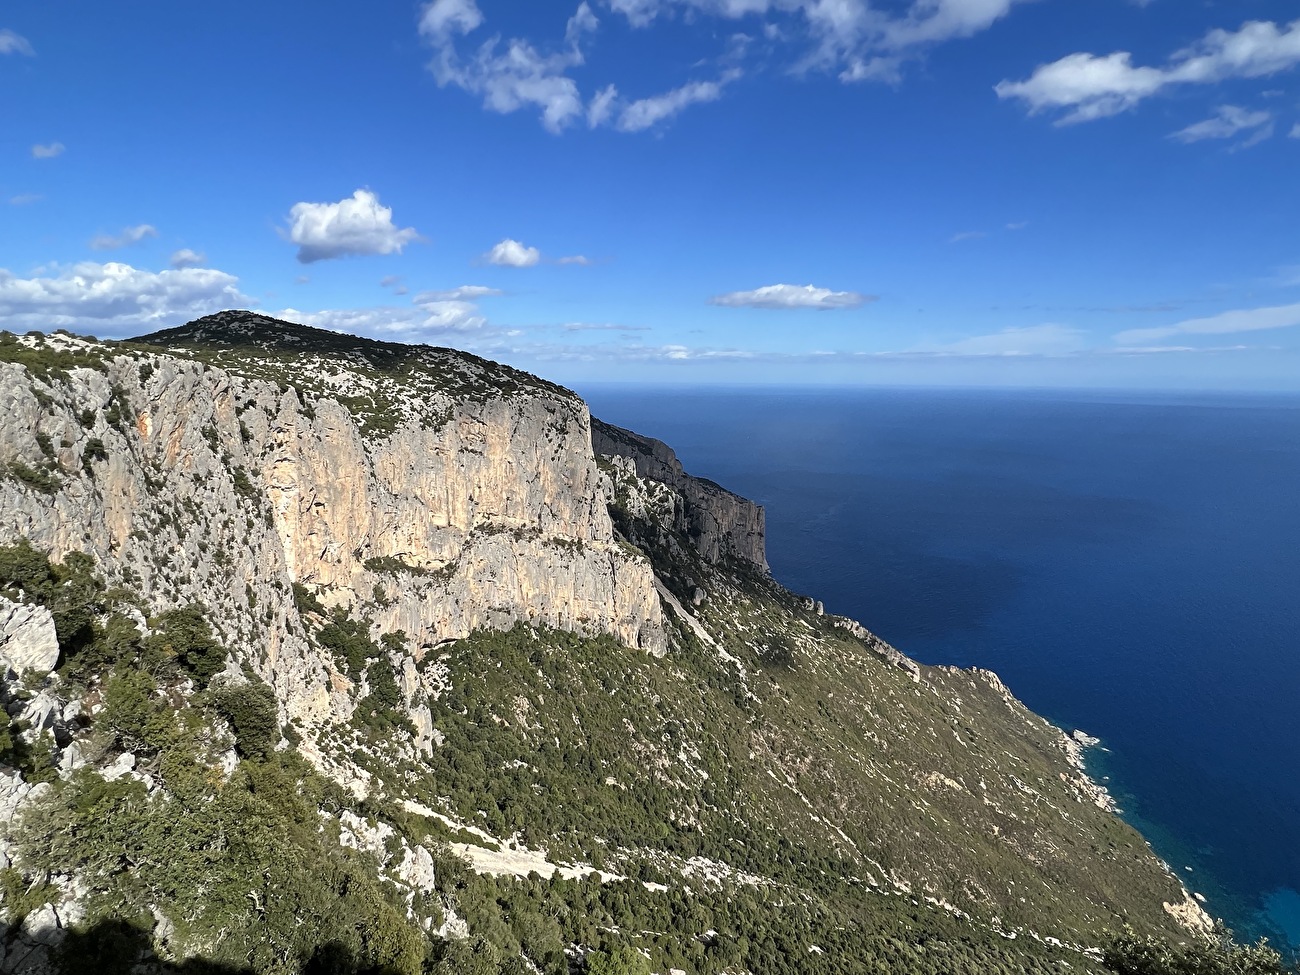 Mediterraneo, Punta Giradili, Sardinia